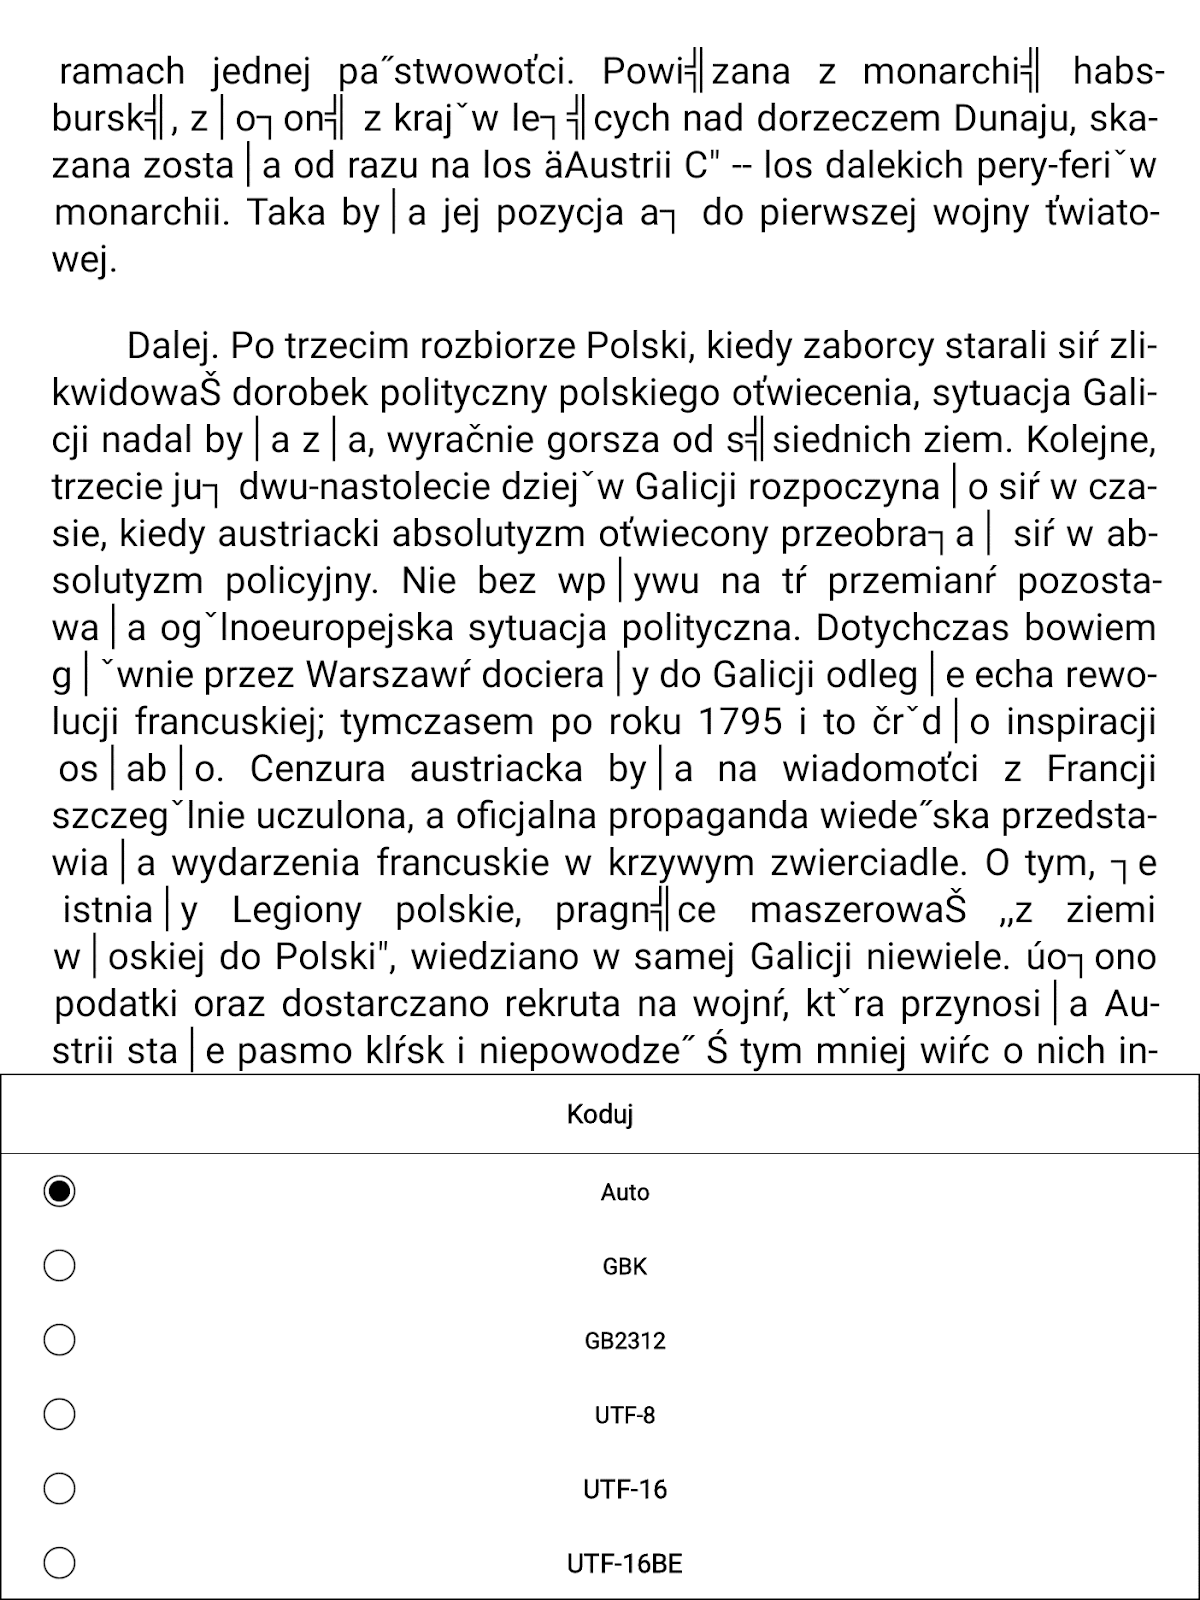 Wybór kodowania tekstu w aplikacji Xreaderna PocketBook InkPad X Pro